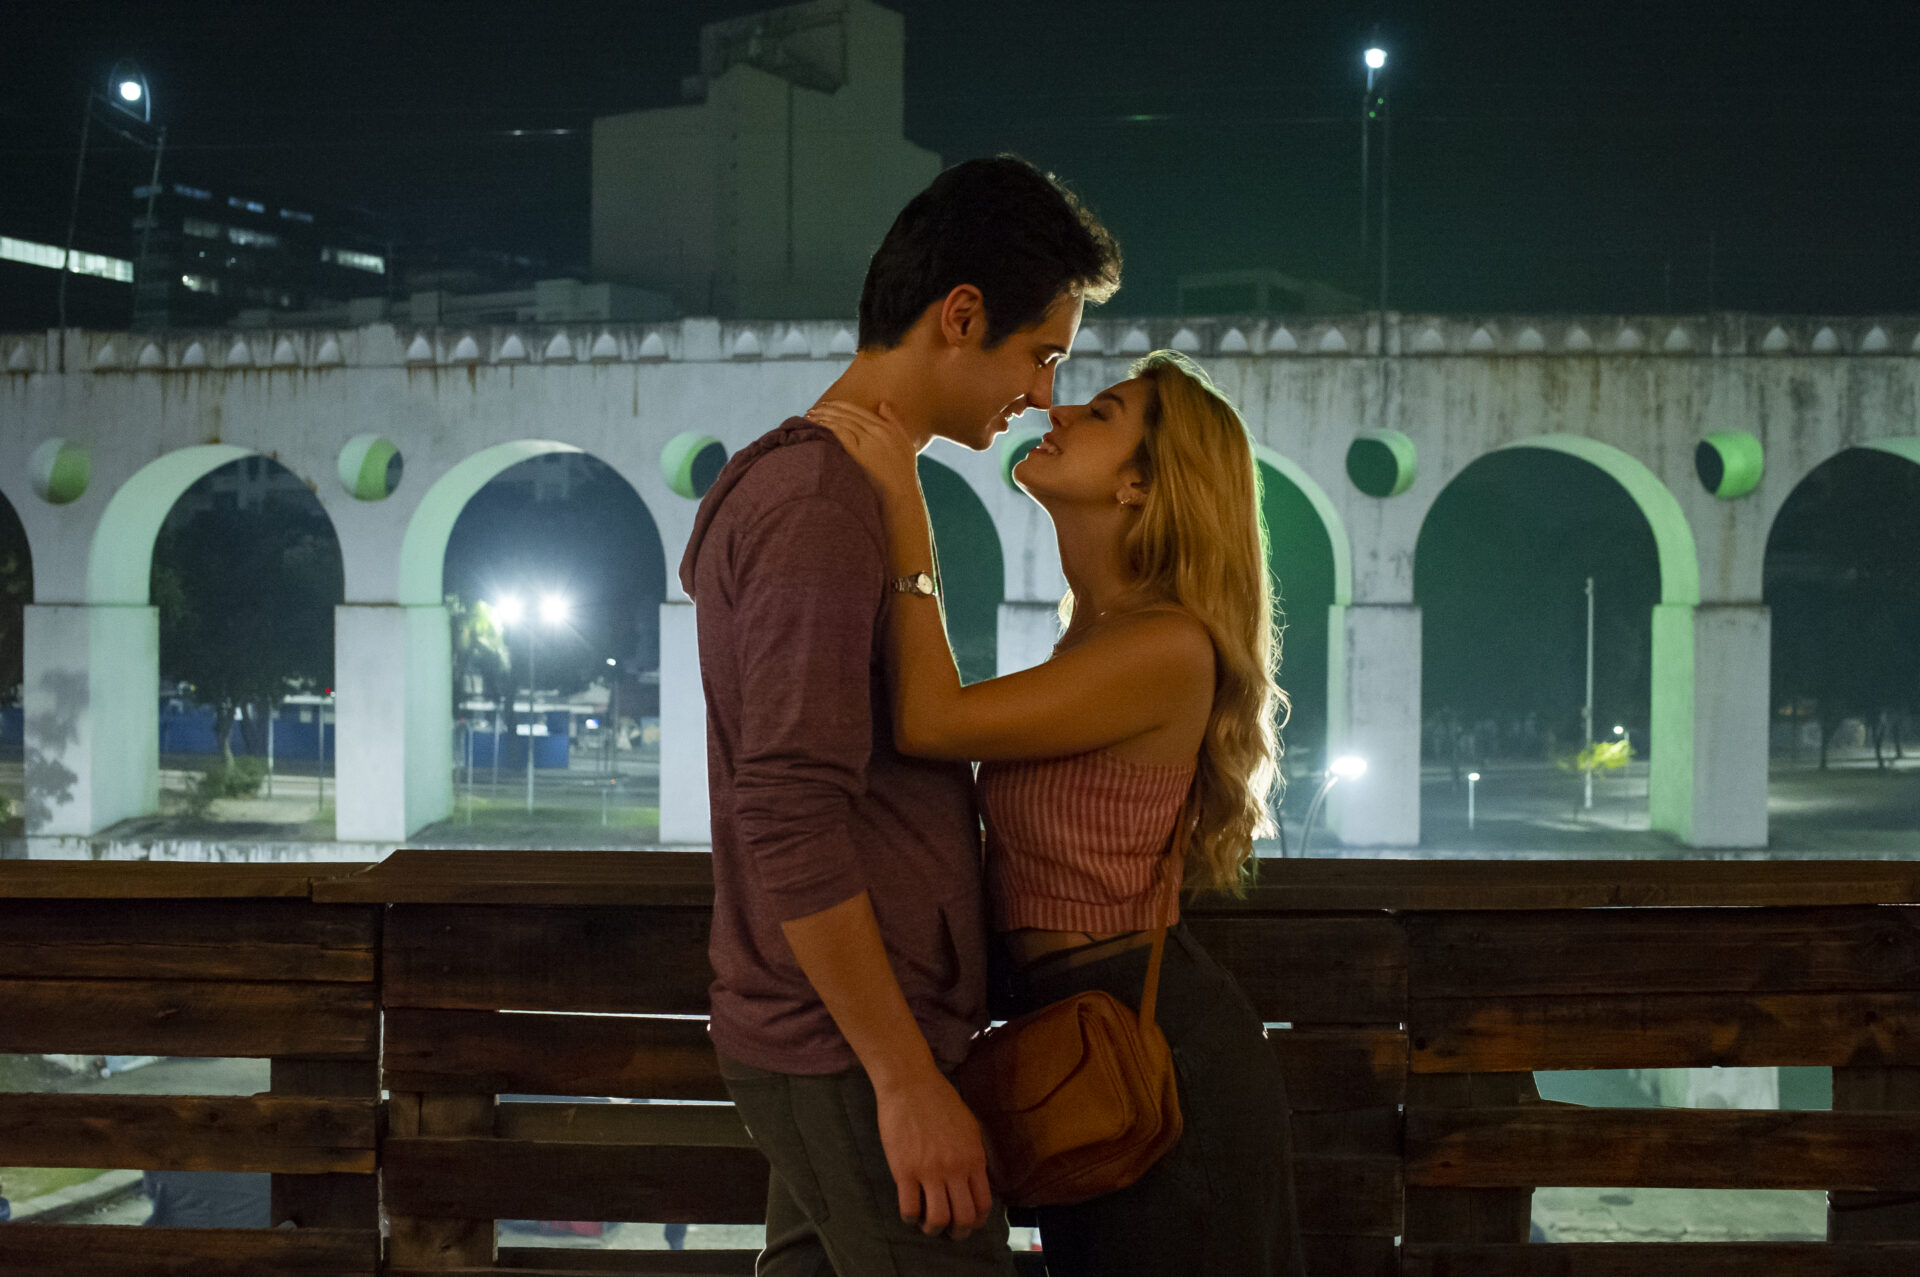 Ricos de Amor 2': Filme nacional Netflix ganhará sequência